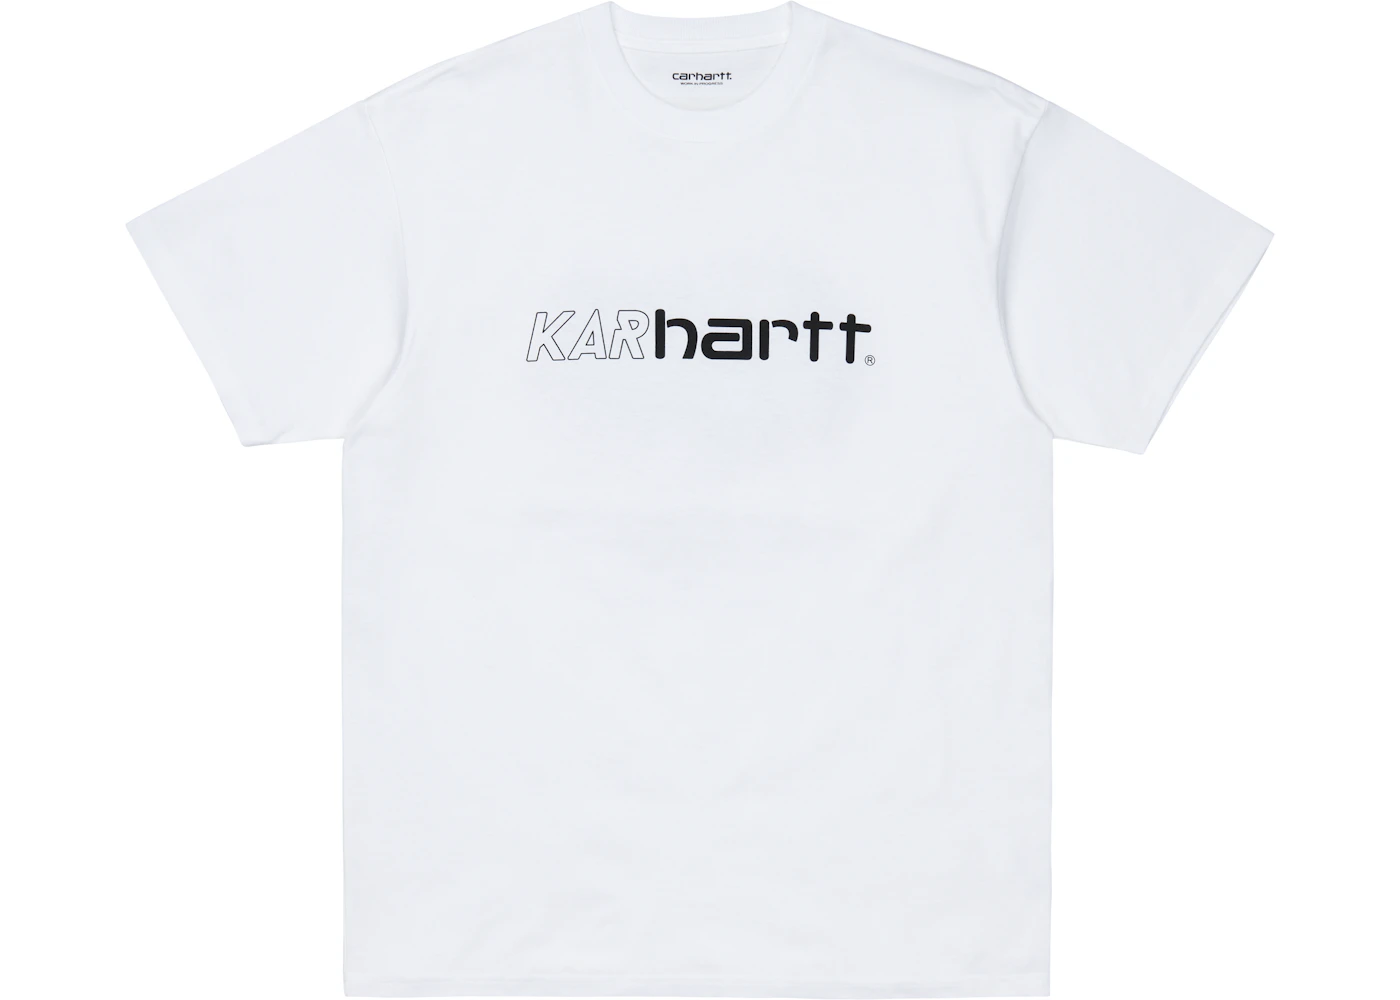 Carhartt Karhartt L'art de l'automobile Ferves T-shirt White 